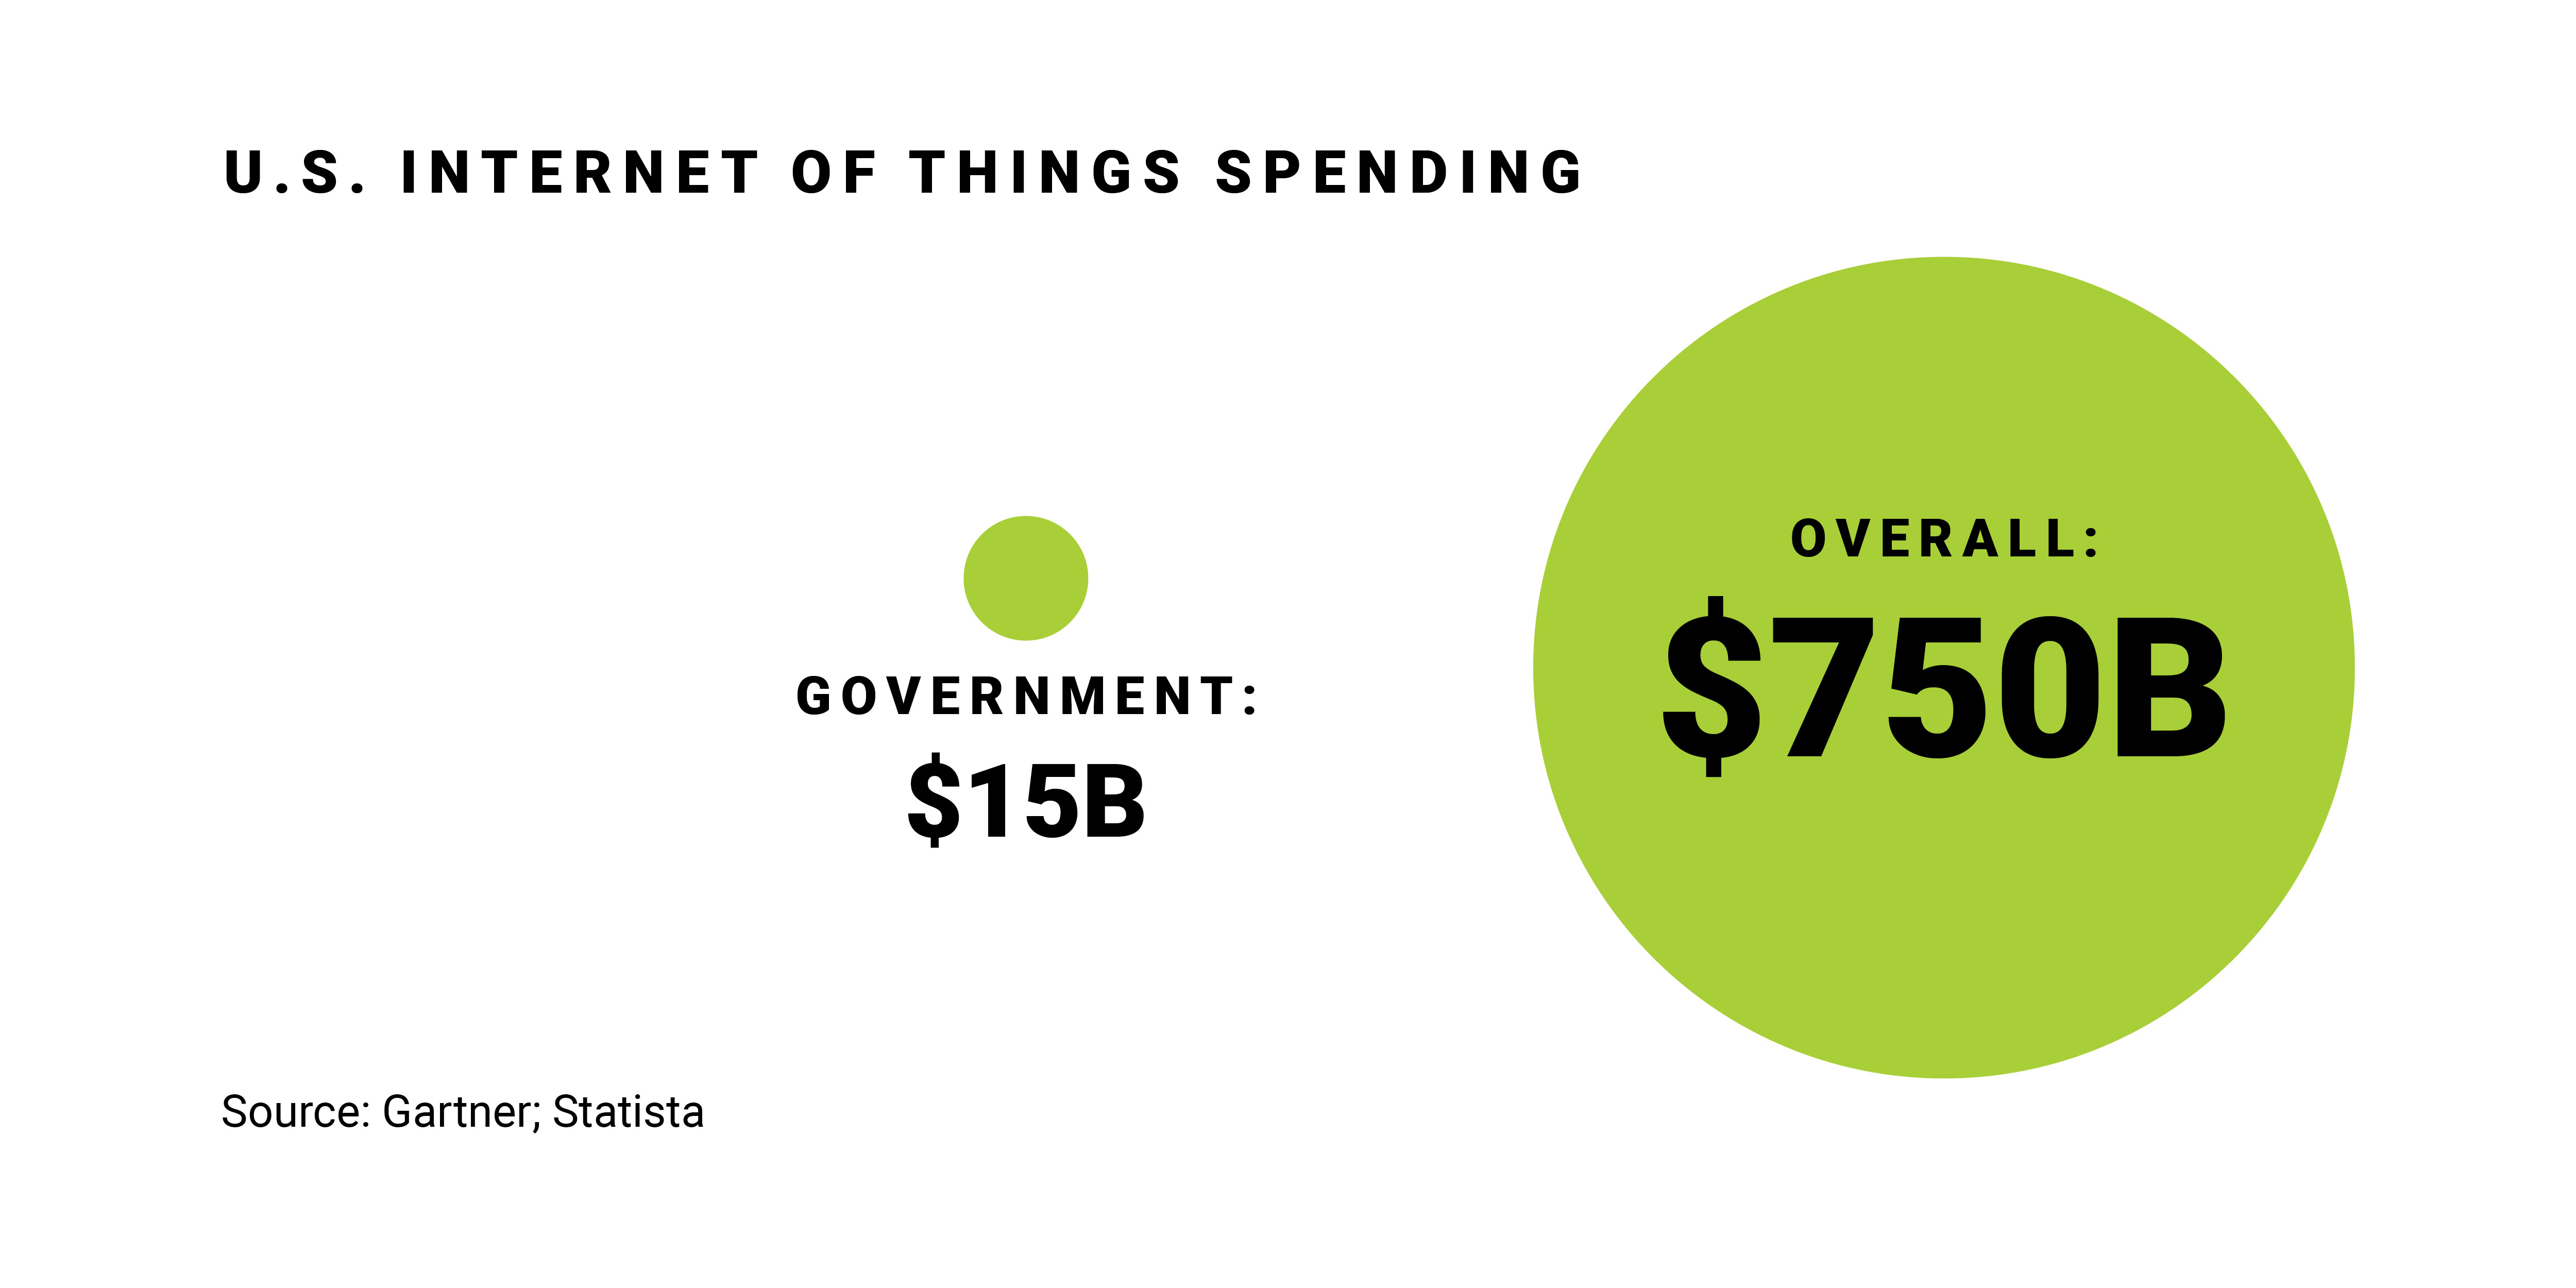 U.S. Internet of Things Spending